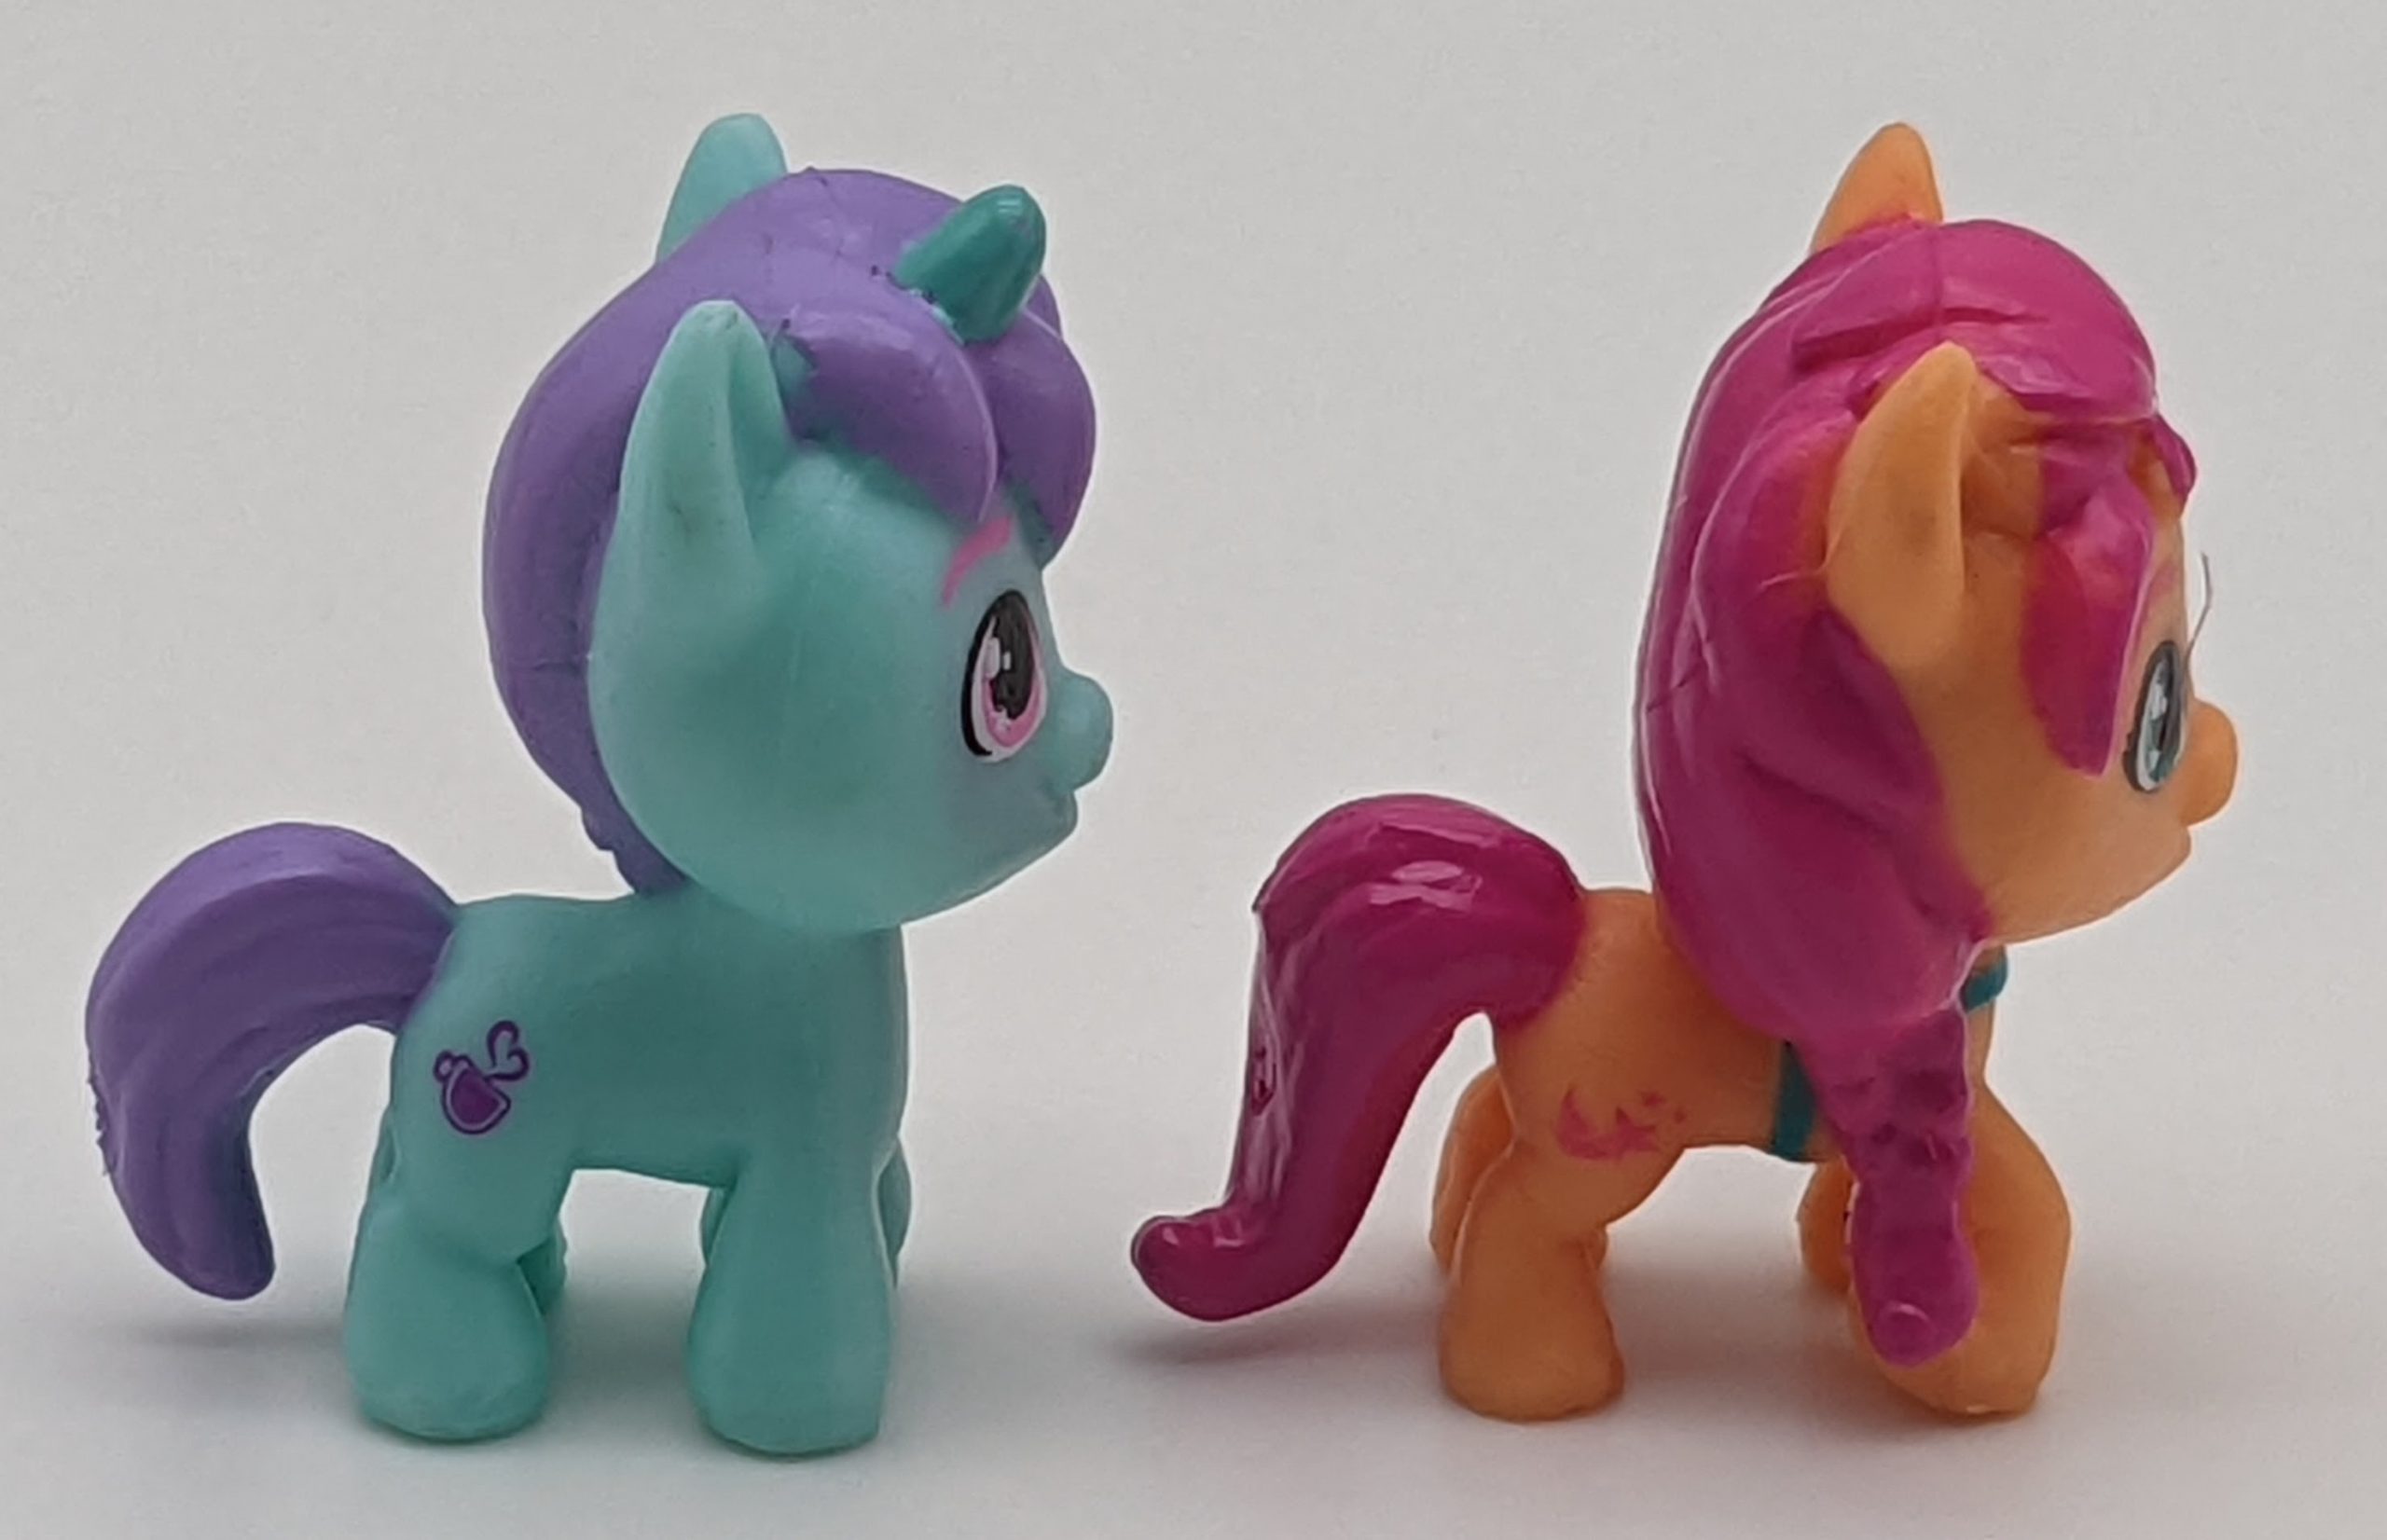 My Little Pony Mini World Magic Mini Equestria Collection Set